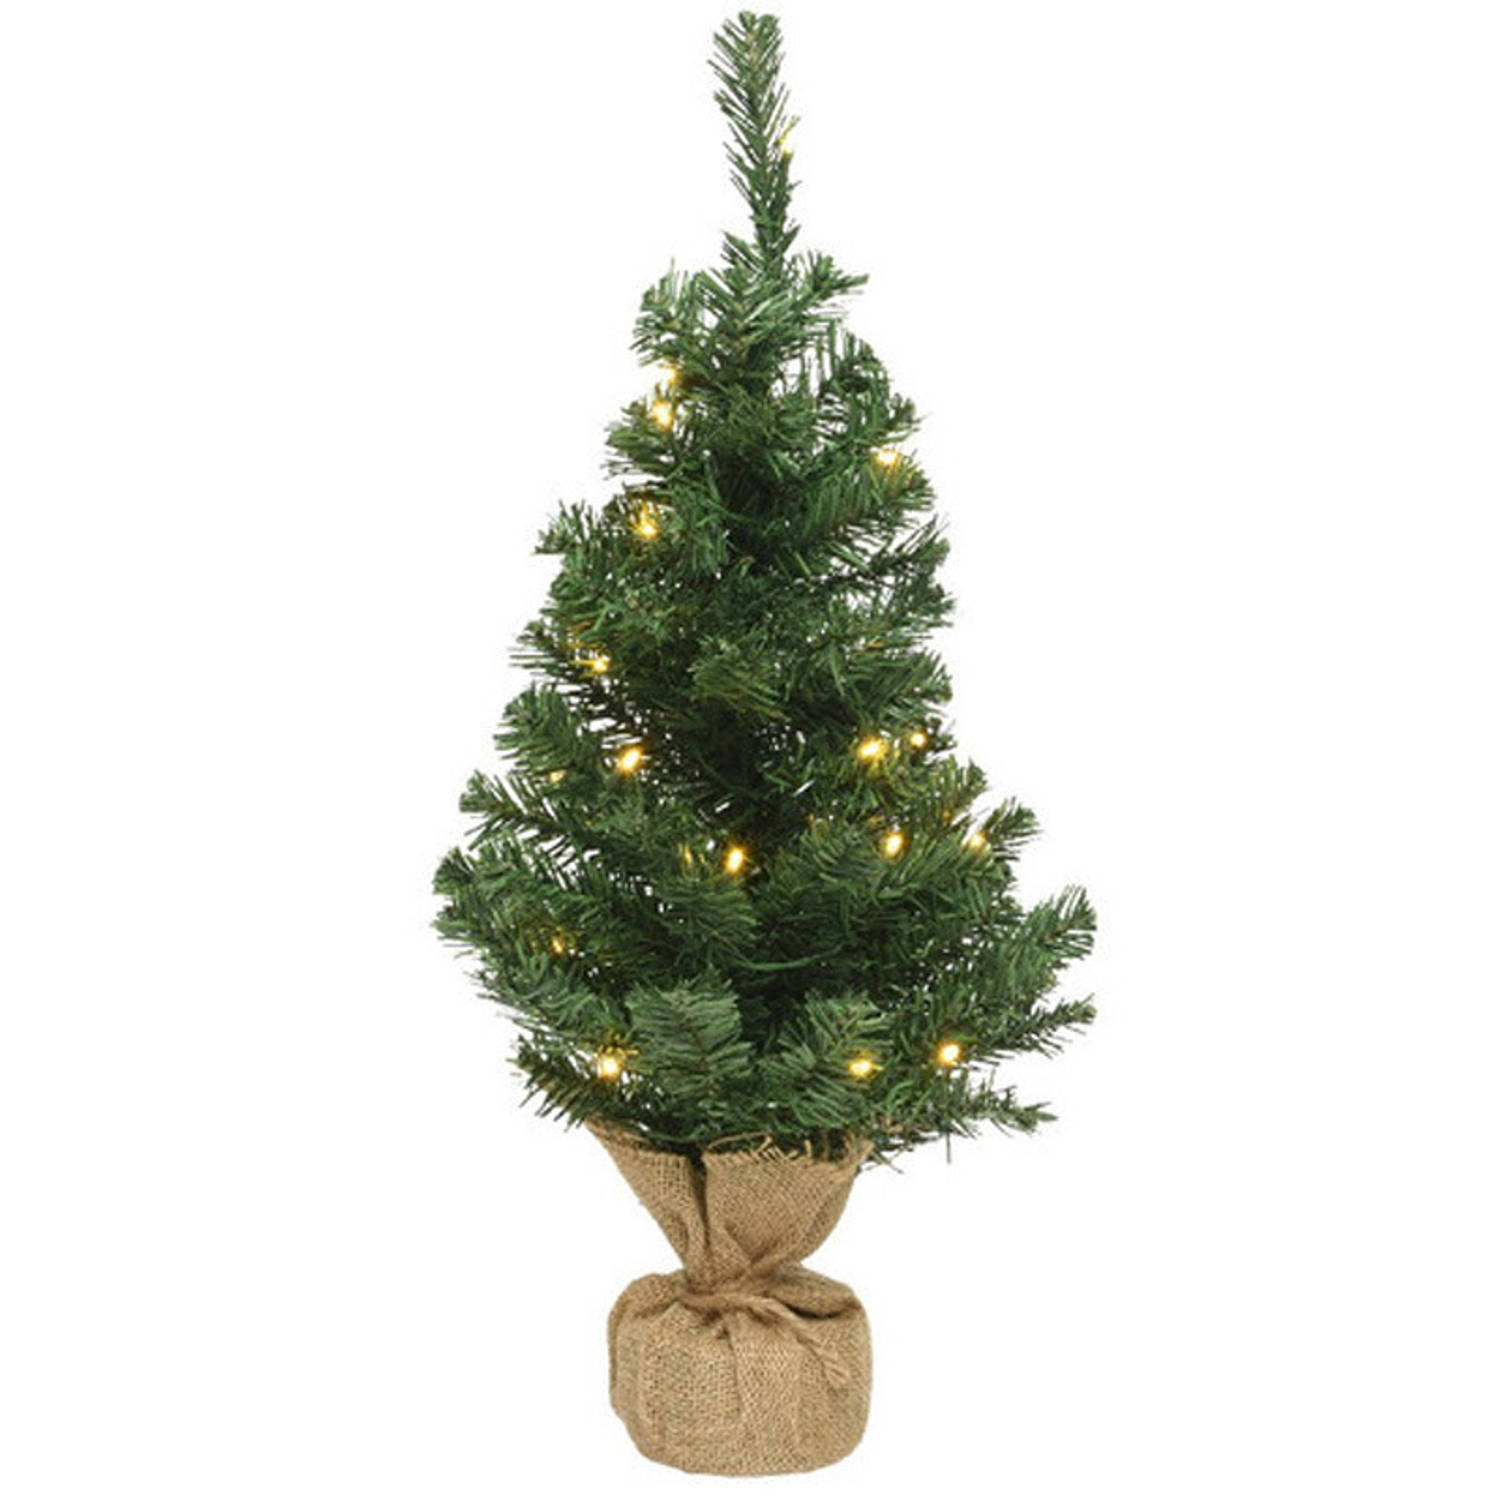 Kerst kerstbomen groen in jute zak met verlichting 90 cm - Kunstkerstboom